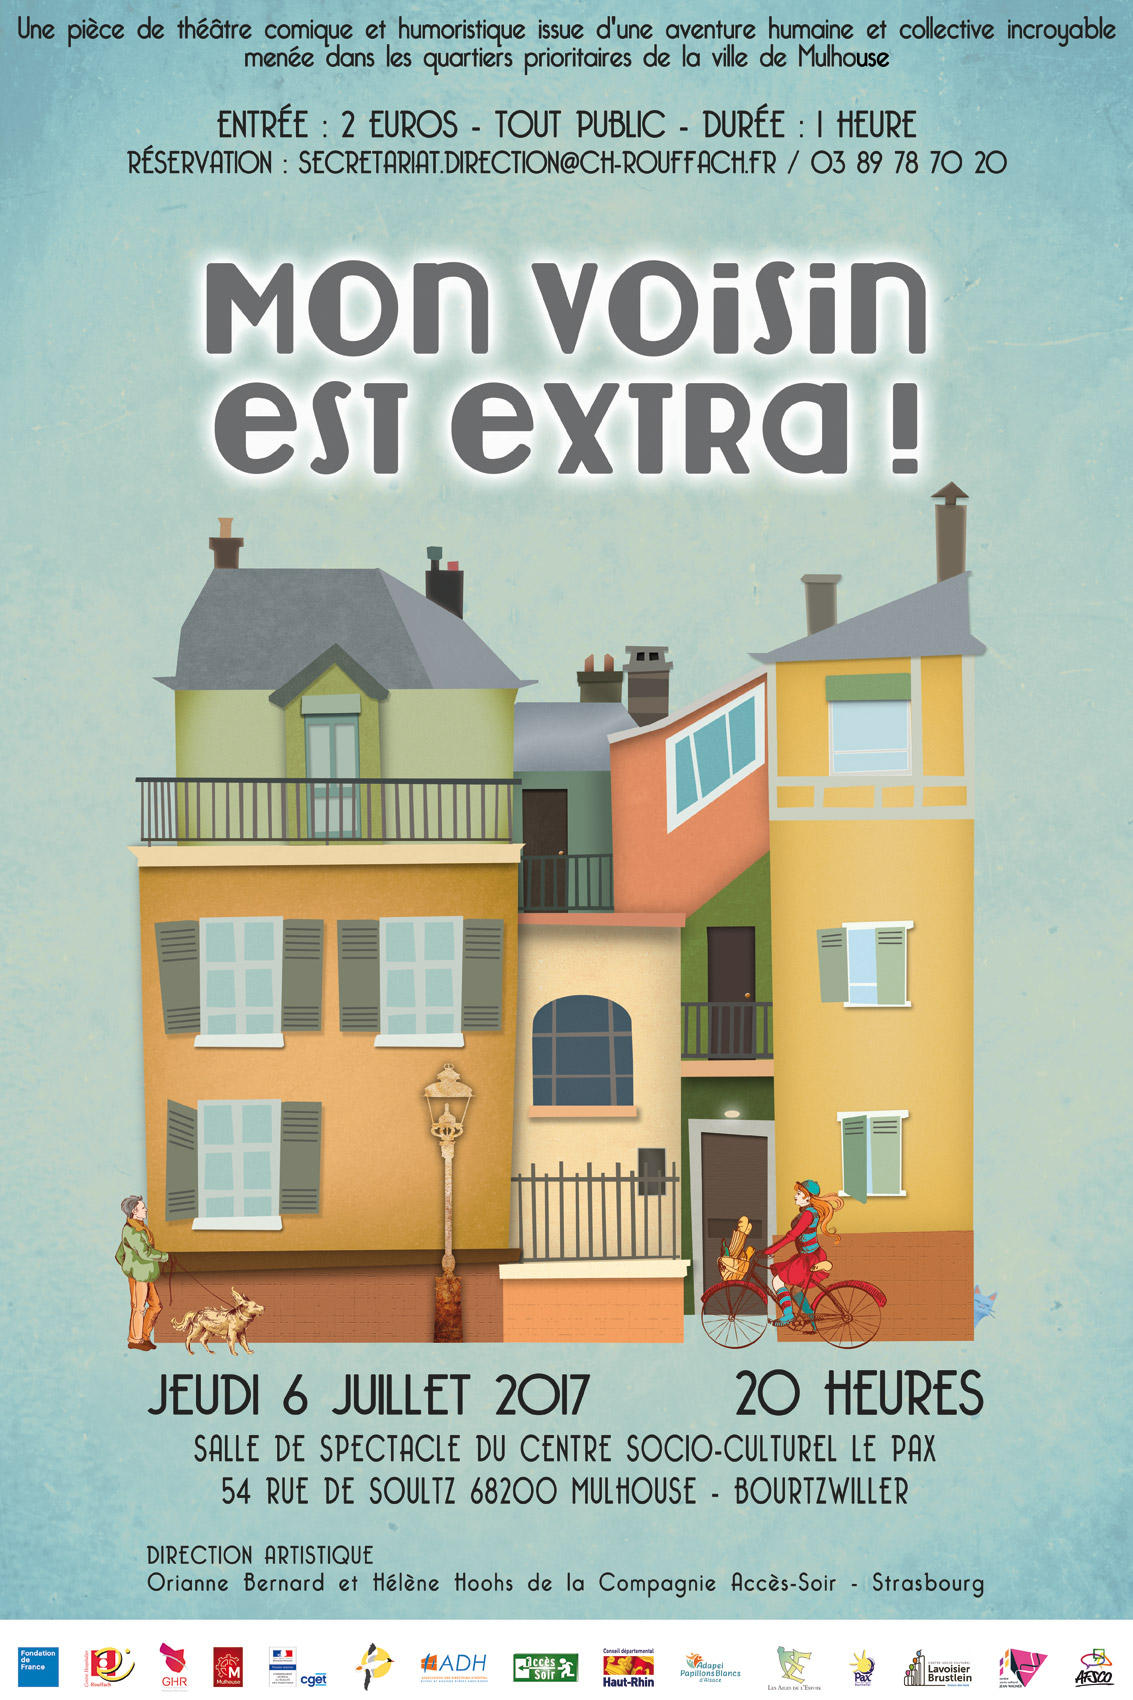 Affiche théâtre quartiers prioritaires de Mulhouse - Mon voisin est extra !